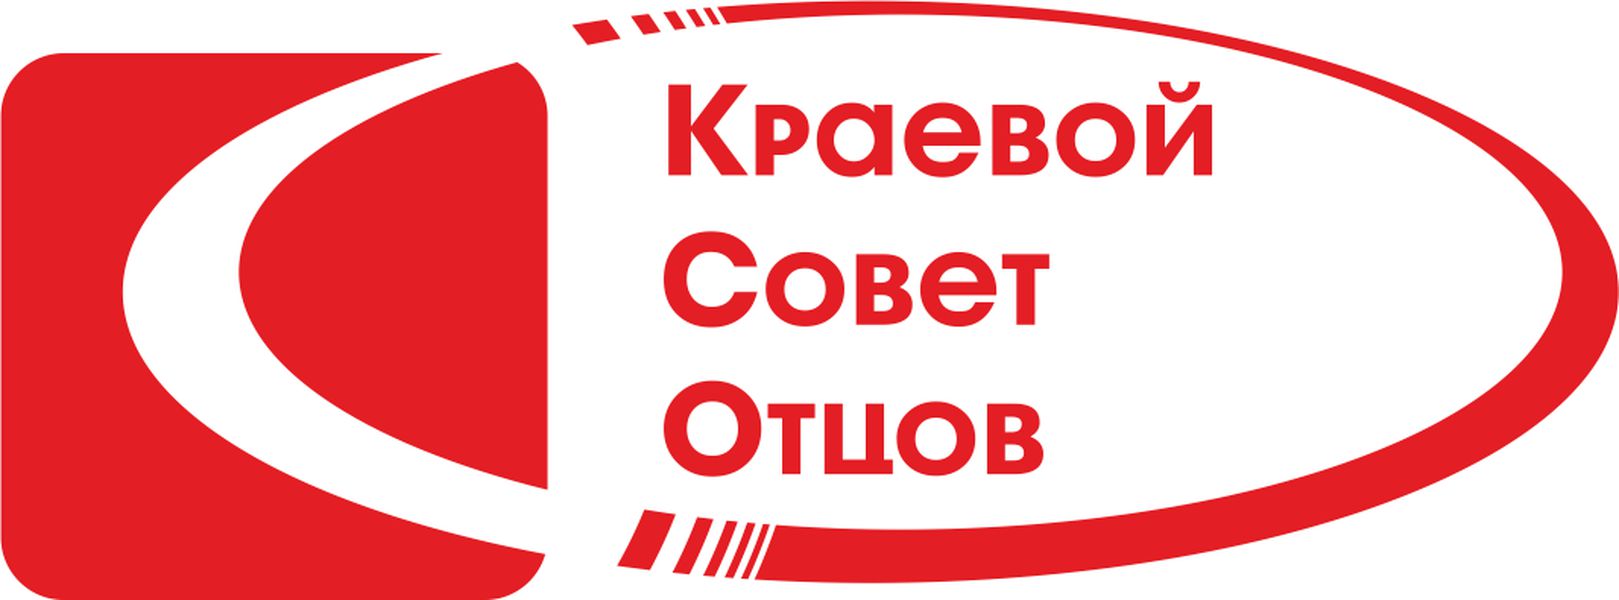 KSO_Logo_ikuagxw.png